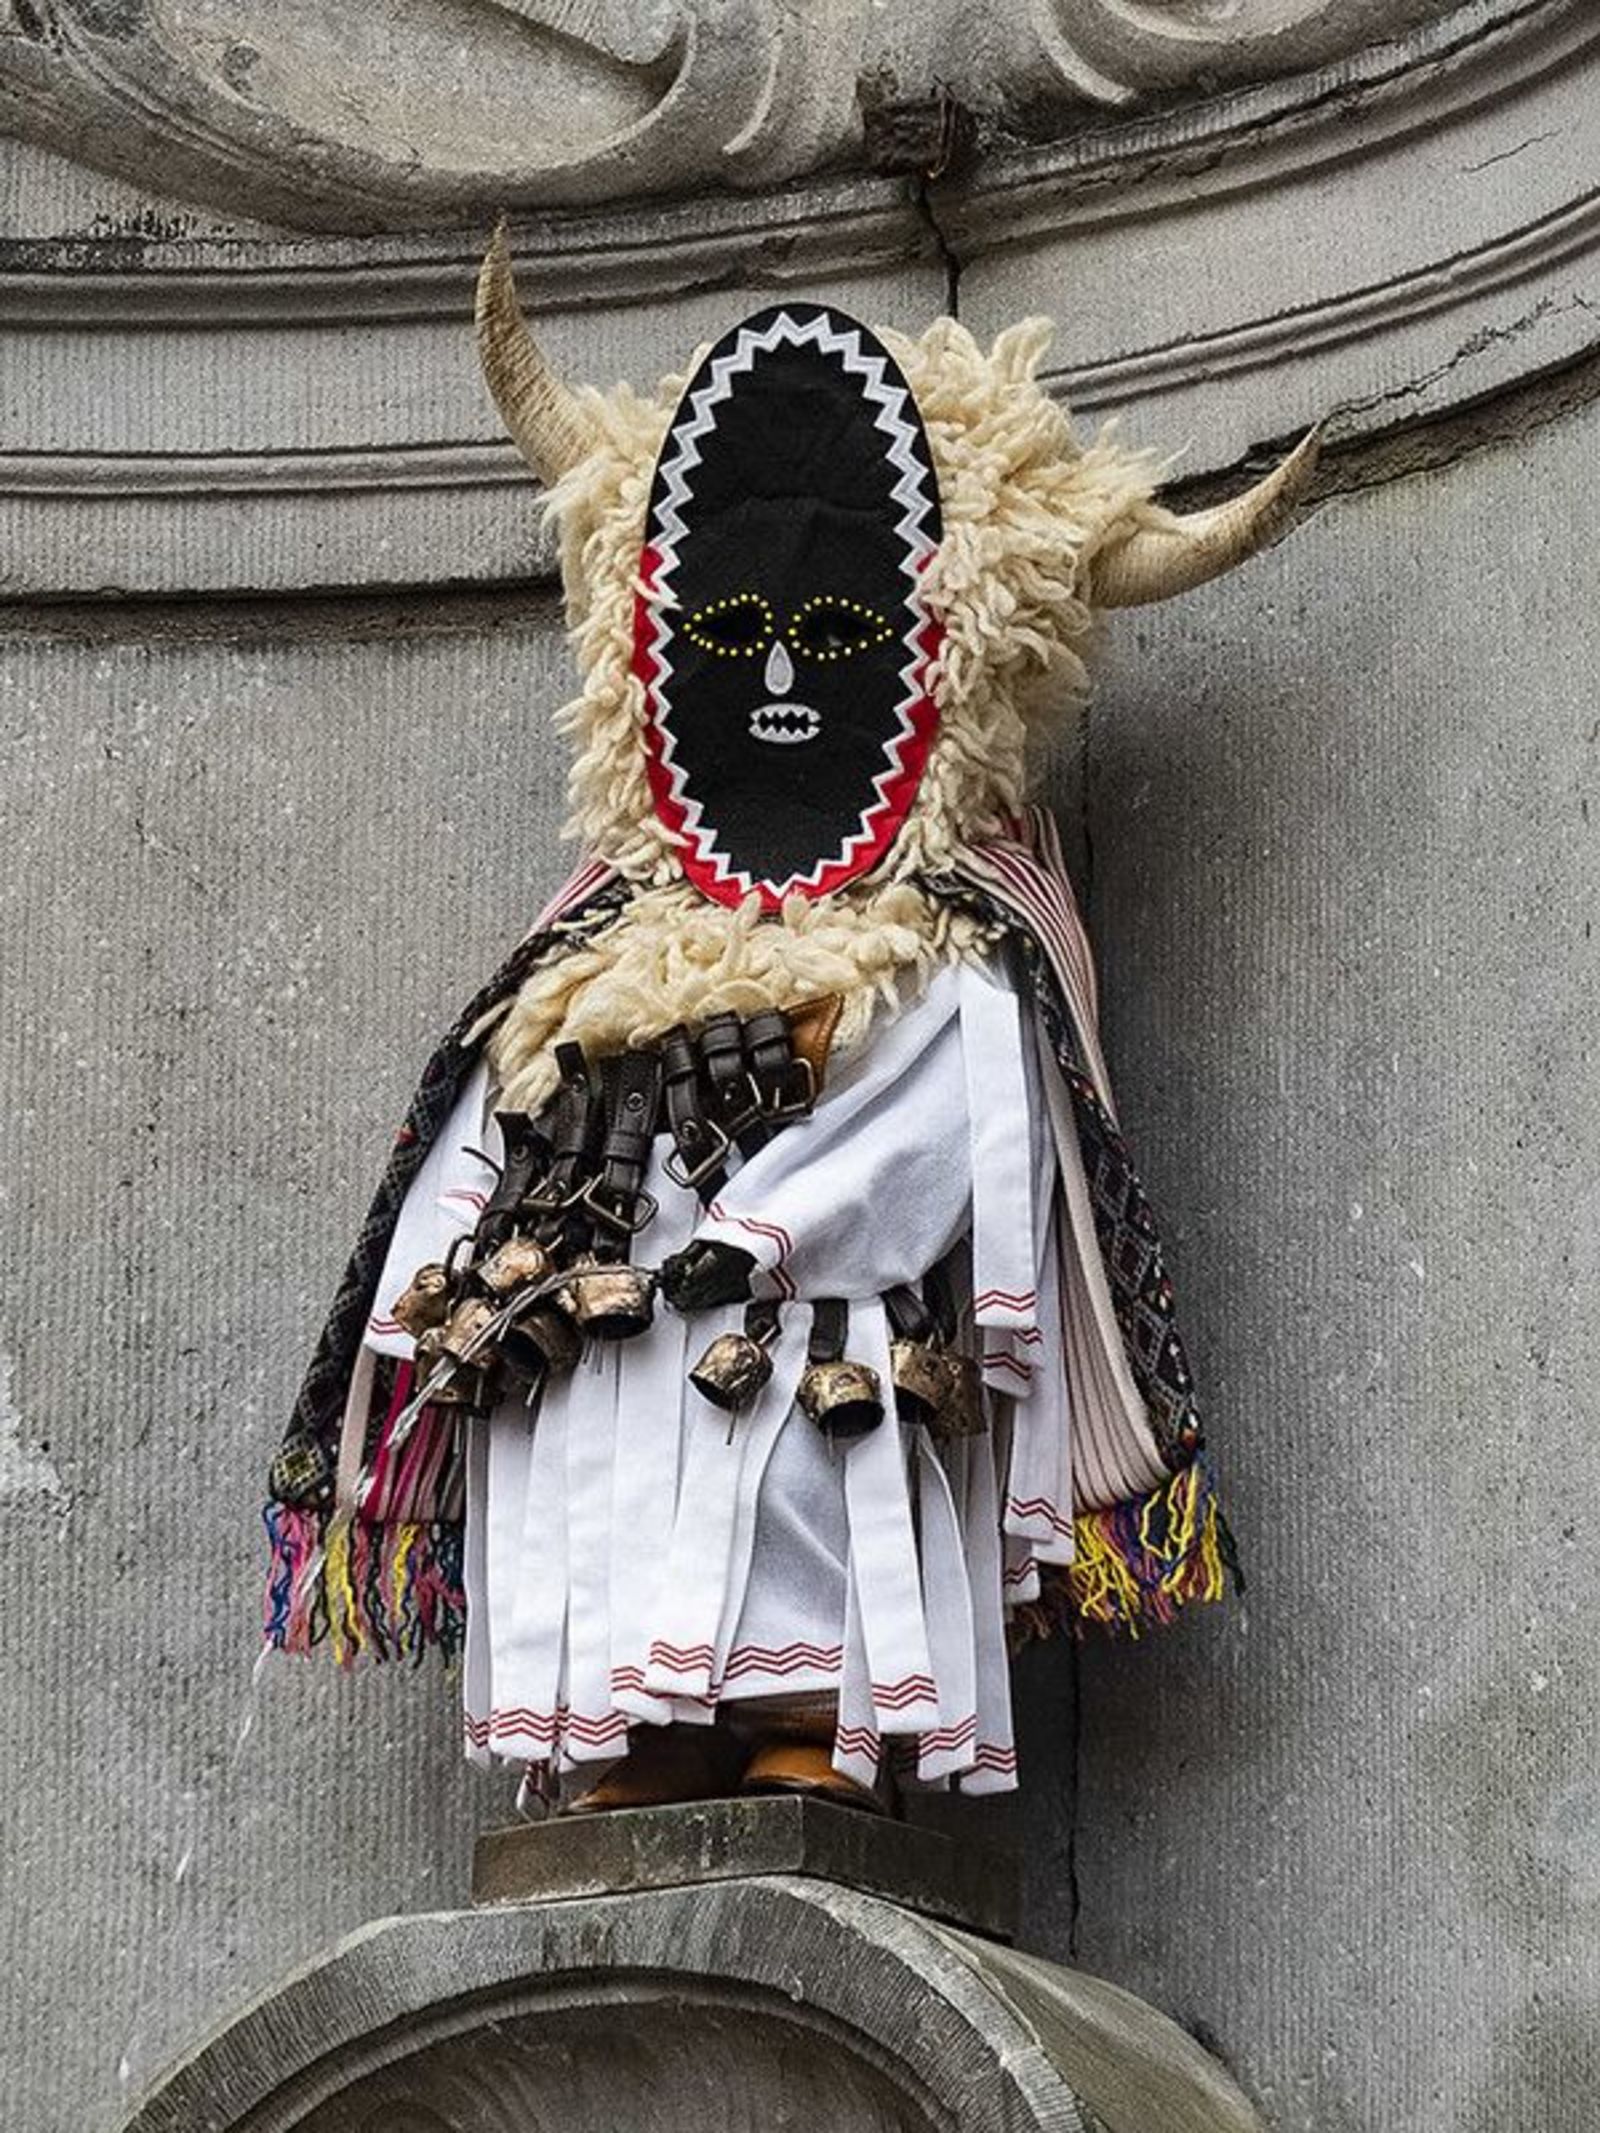 Bulgarian kuker costume for the symbol of Brussels - Manneken Pis